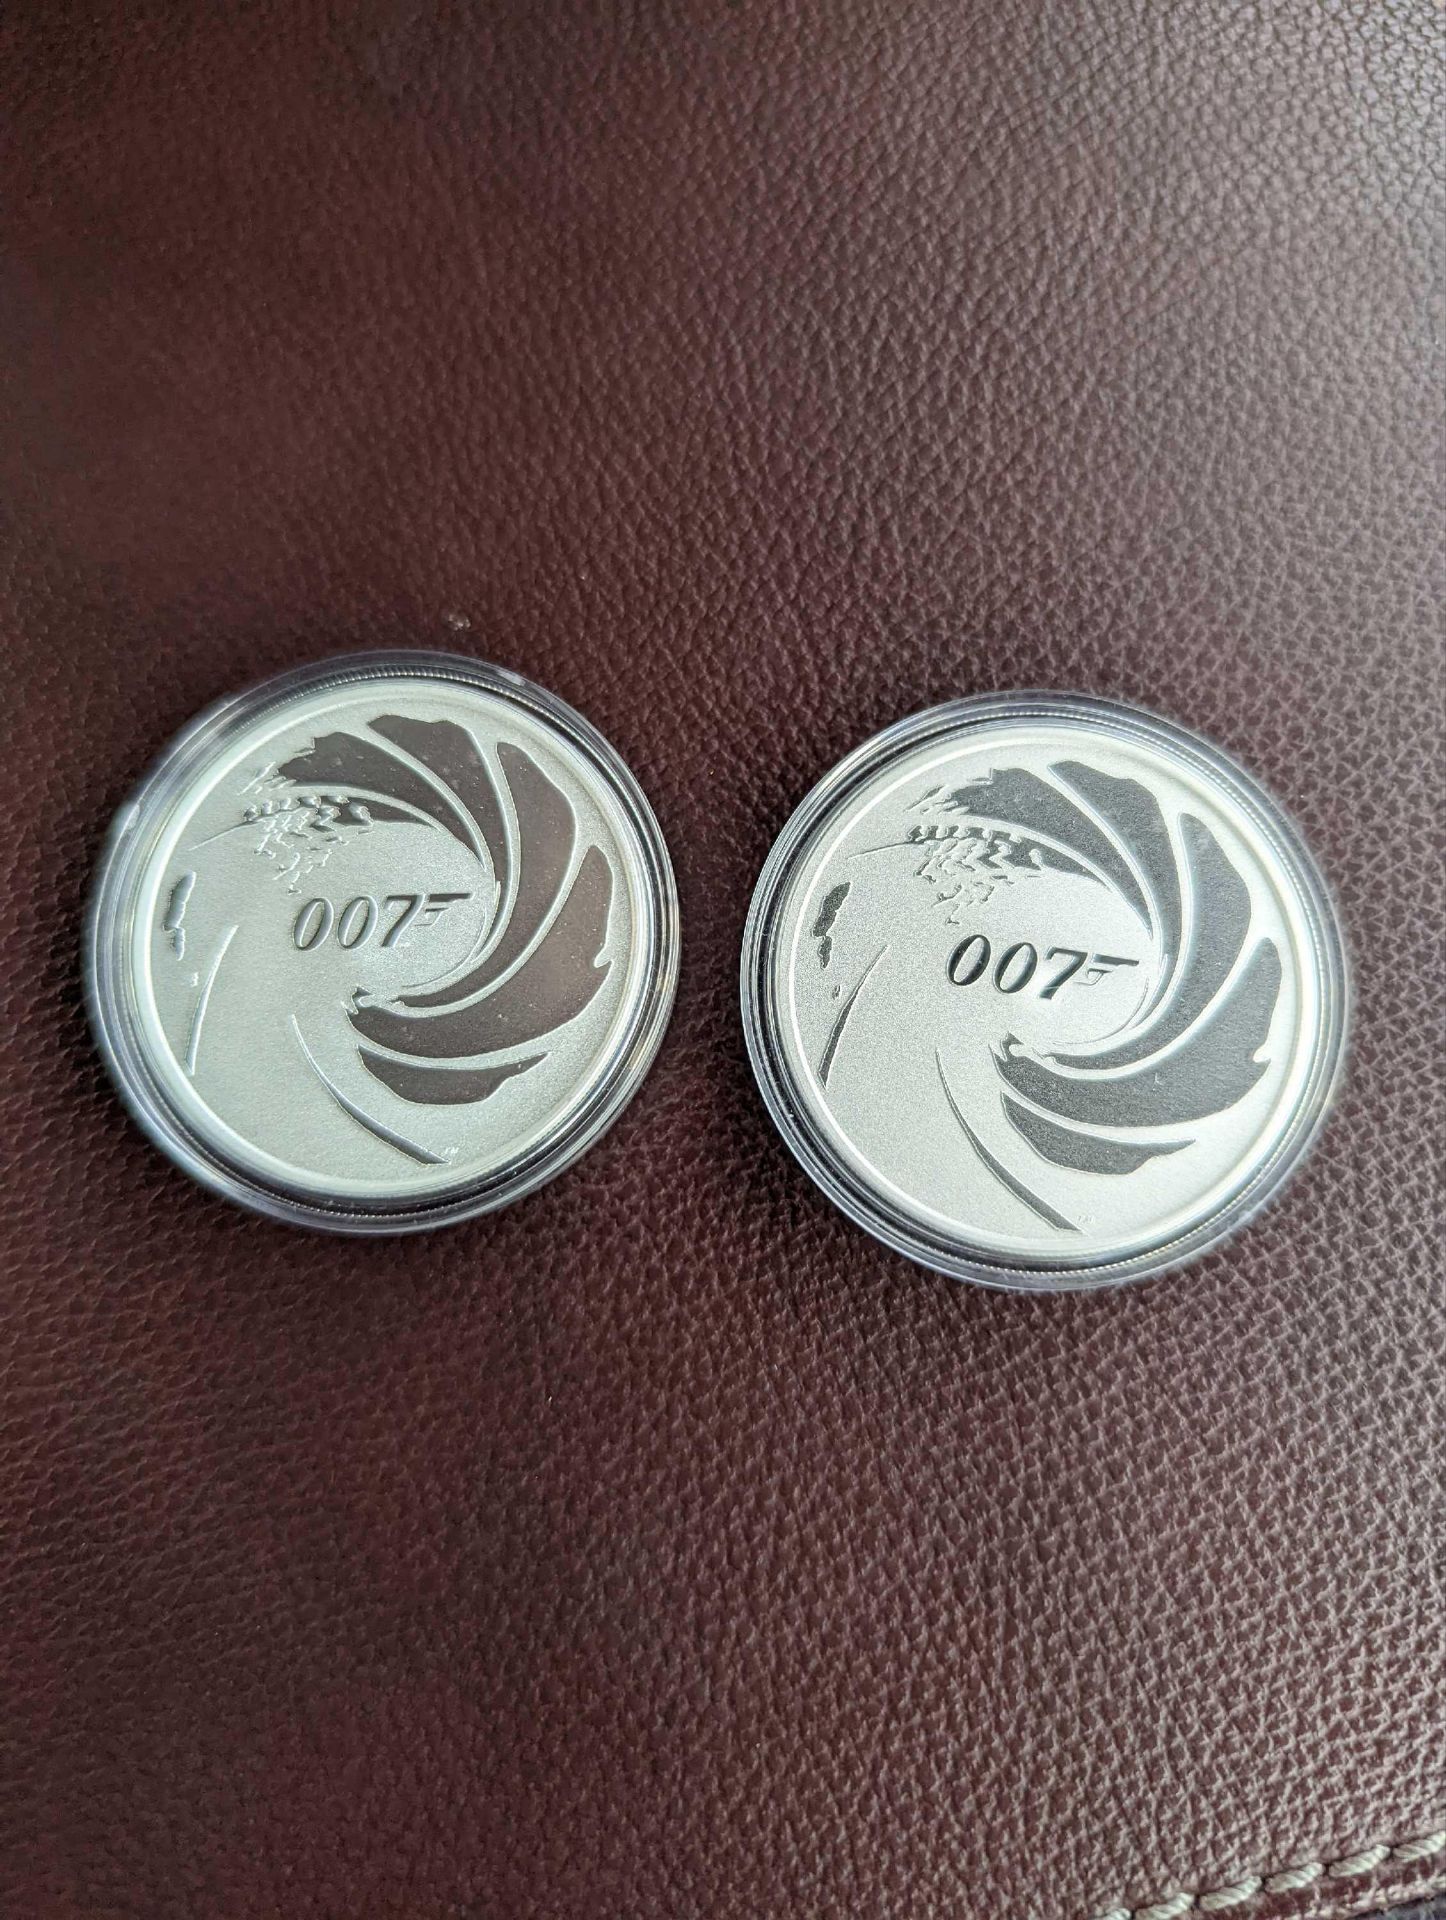 2 007 silver coins